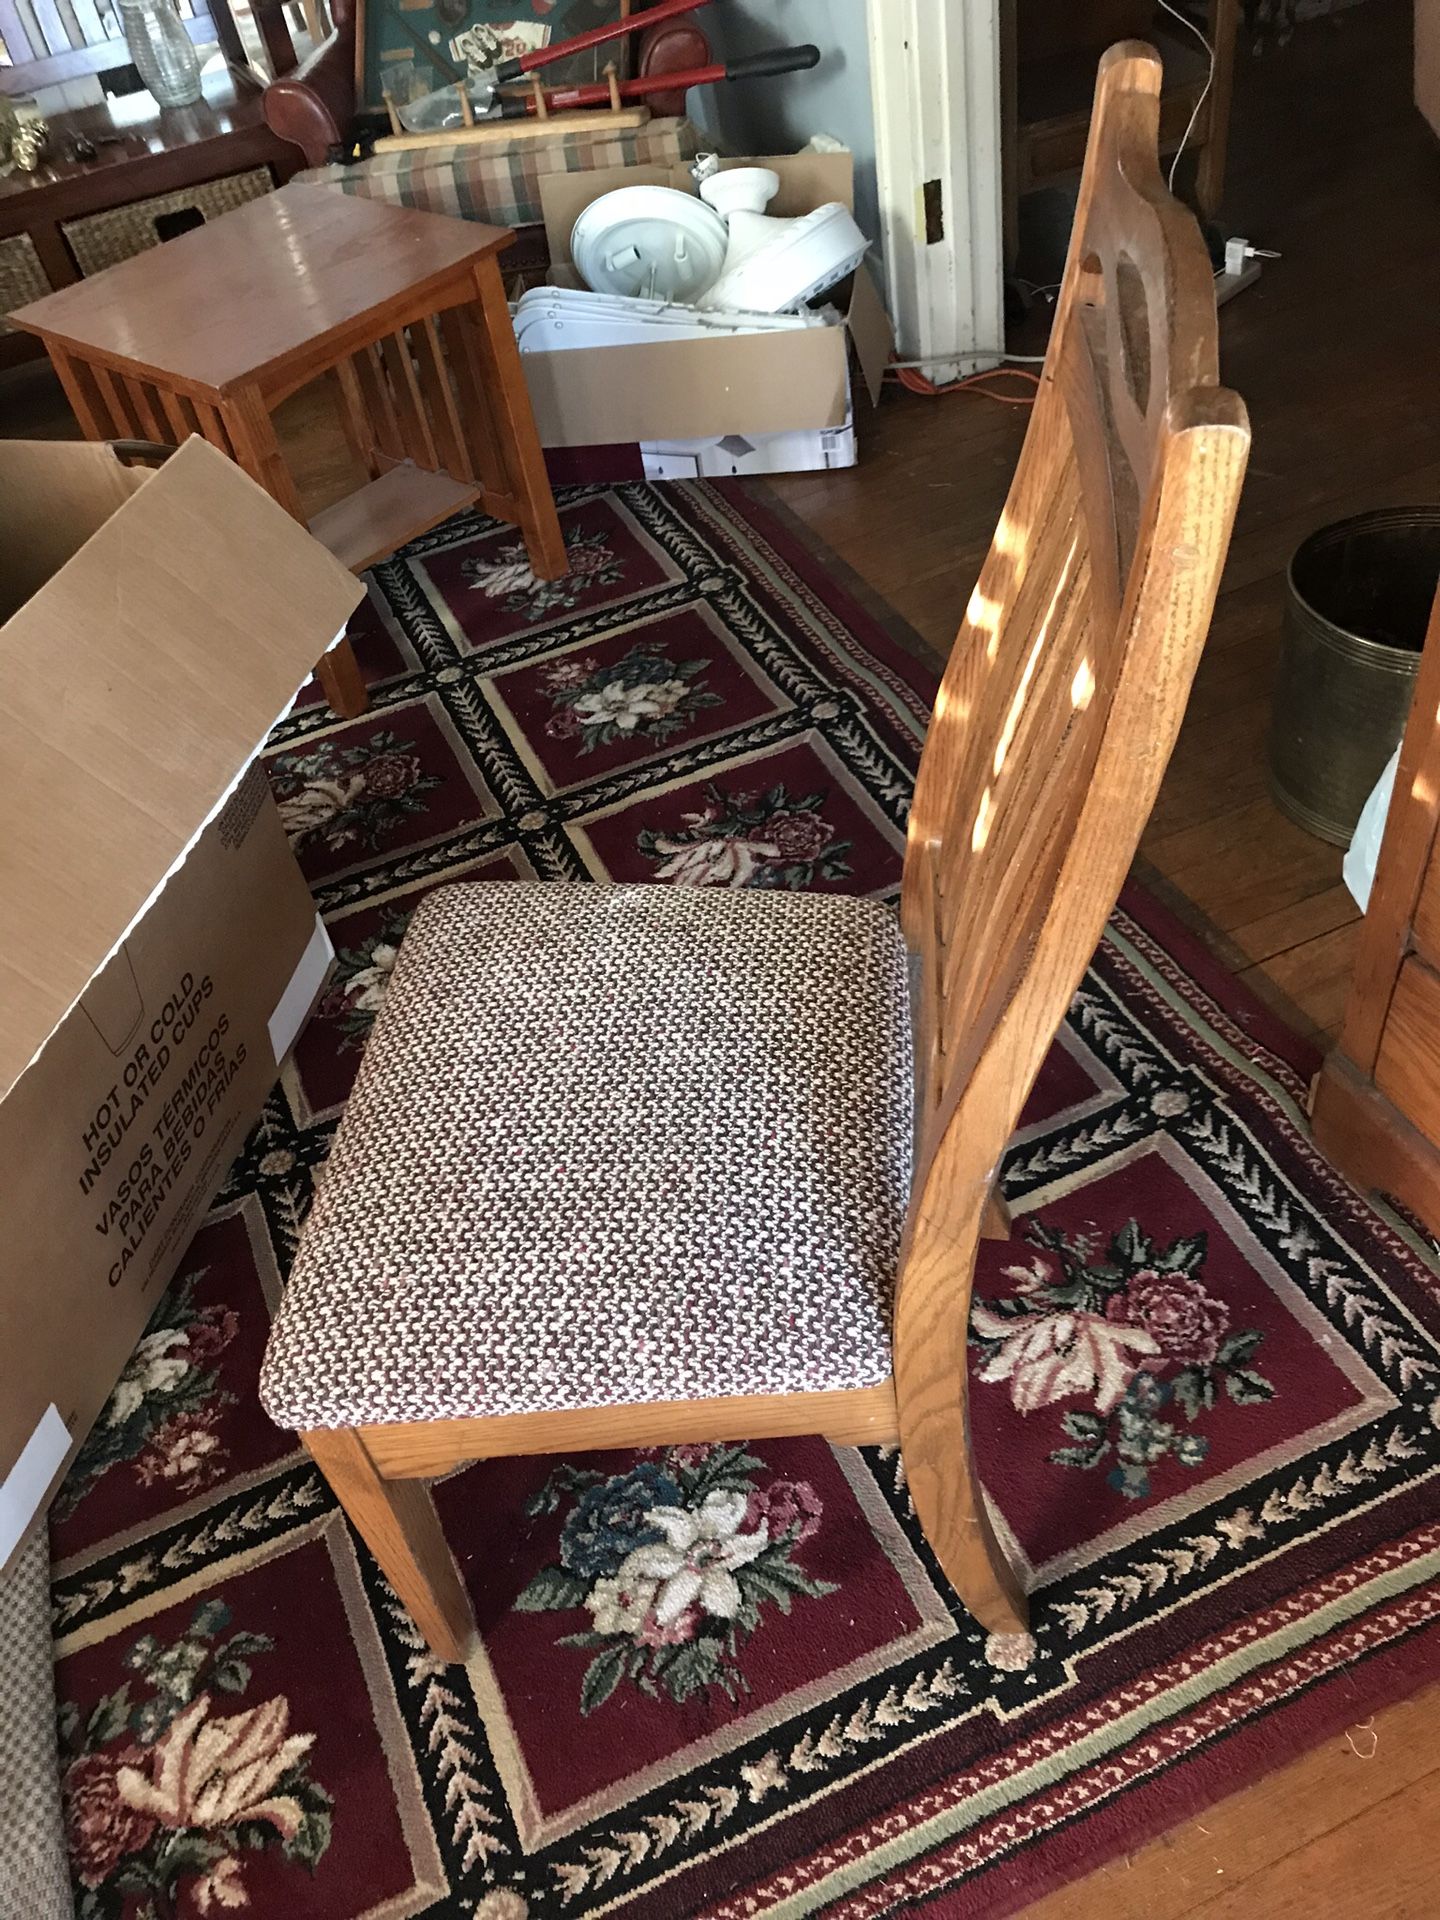 Antique desk chair, excellent condition